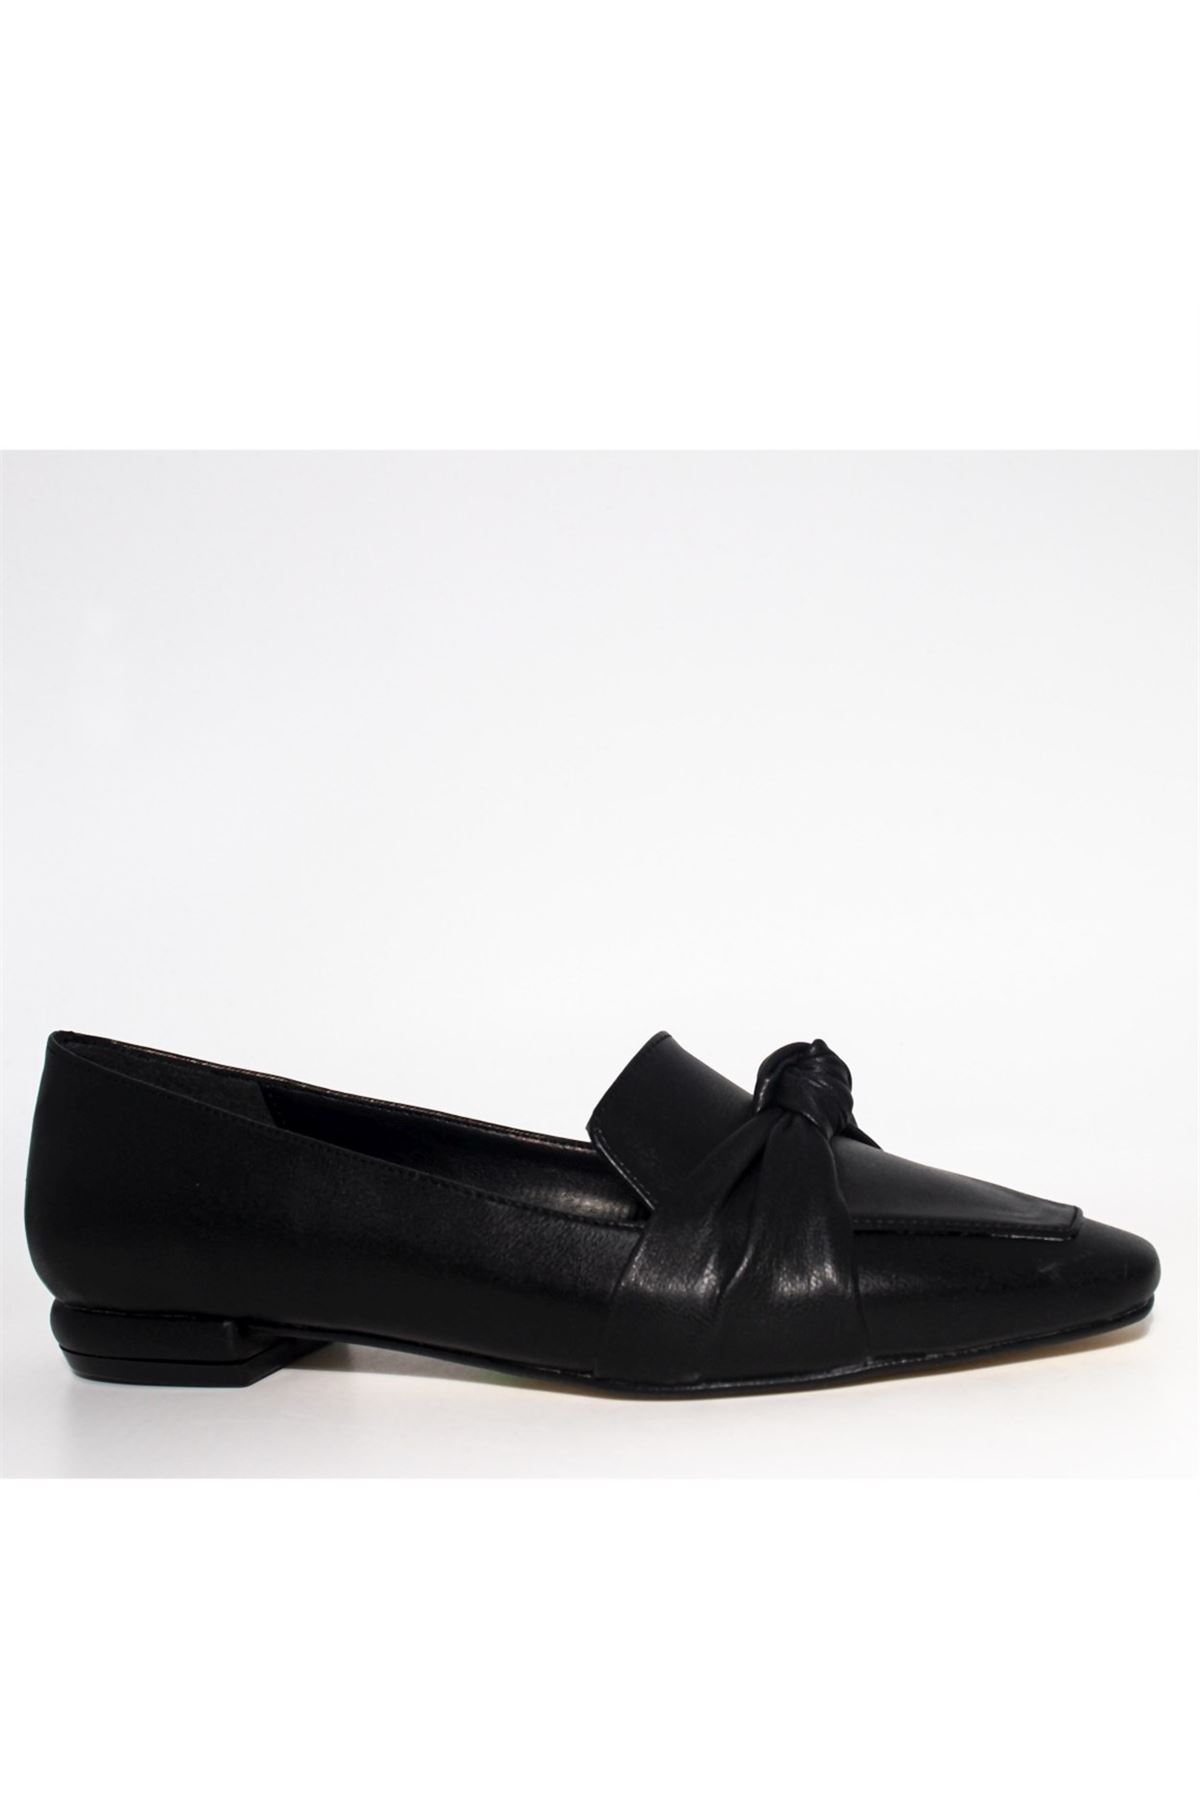 Kadın Önden Düğümlü Loafer Ayakkabı - Siyah